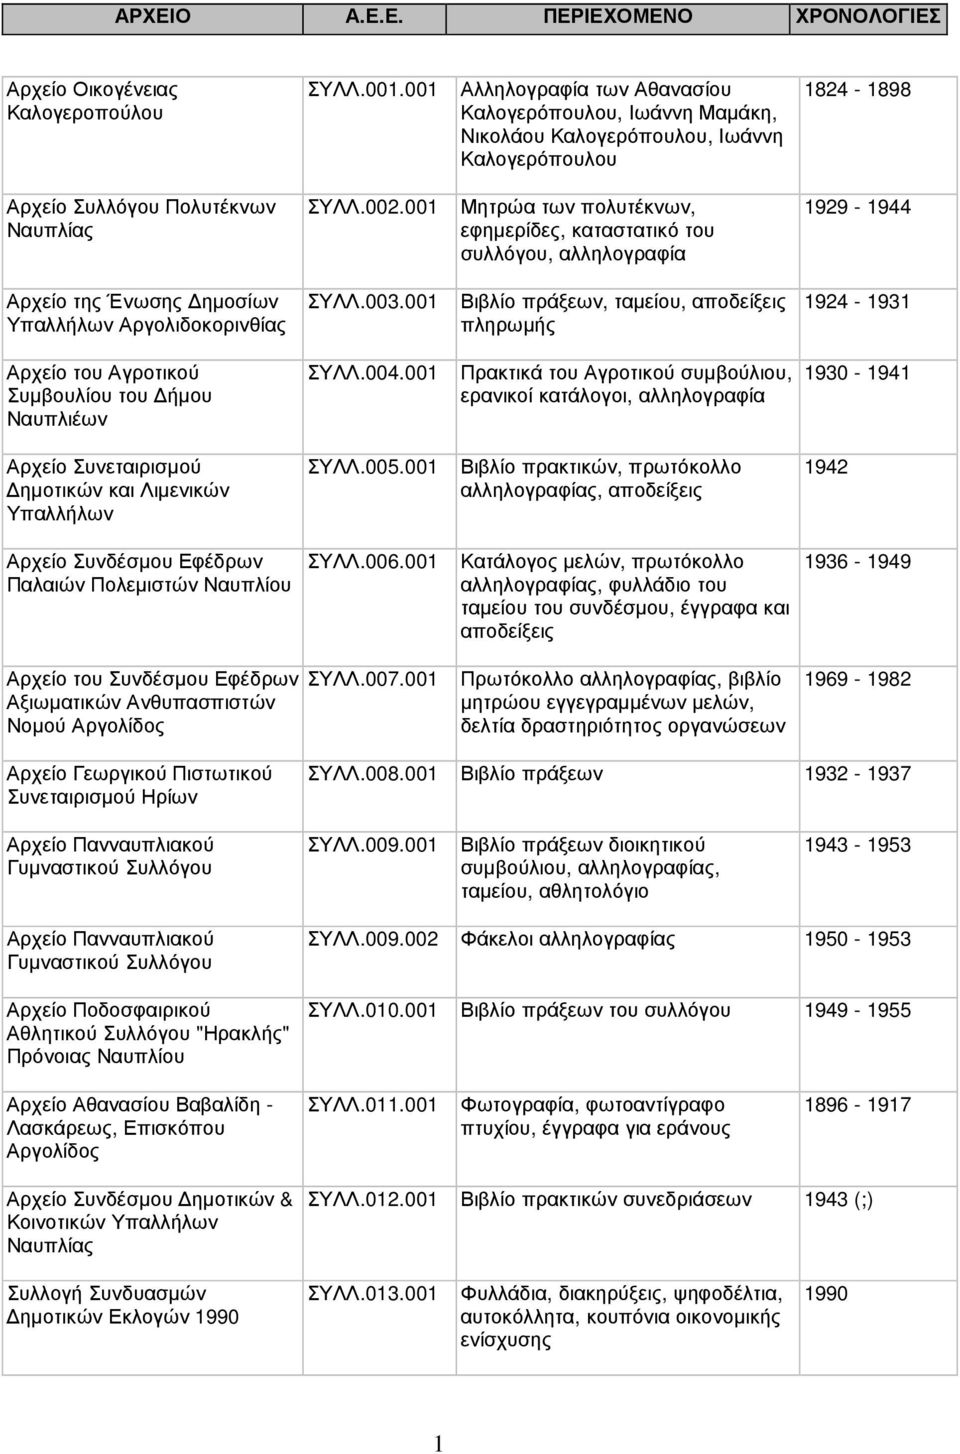 001 Αλληλογραφία των Αθανασίου Καλογερόπουλου, Ιωάννη Μαµάκη, Νικολάου Καλογερόπουλου, Ιωάννη Καλογερόπουλου ΣΥΛΛ.002.